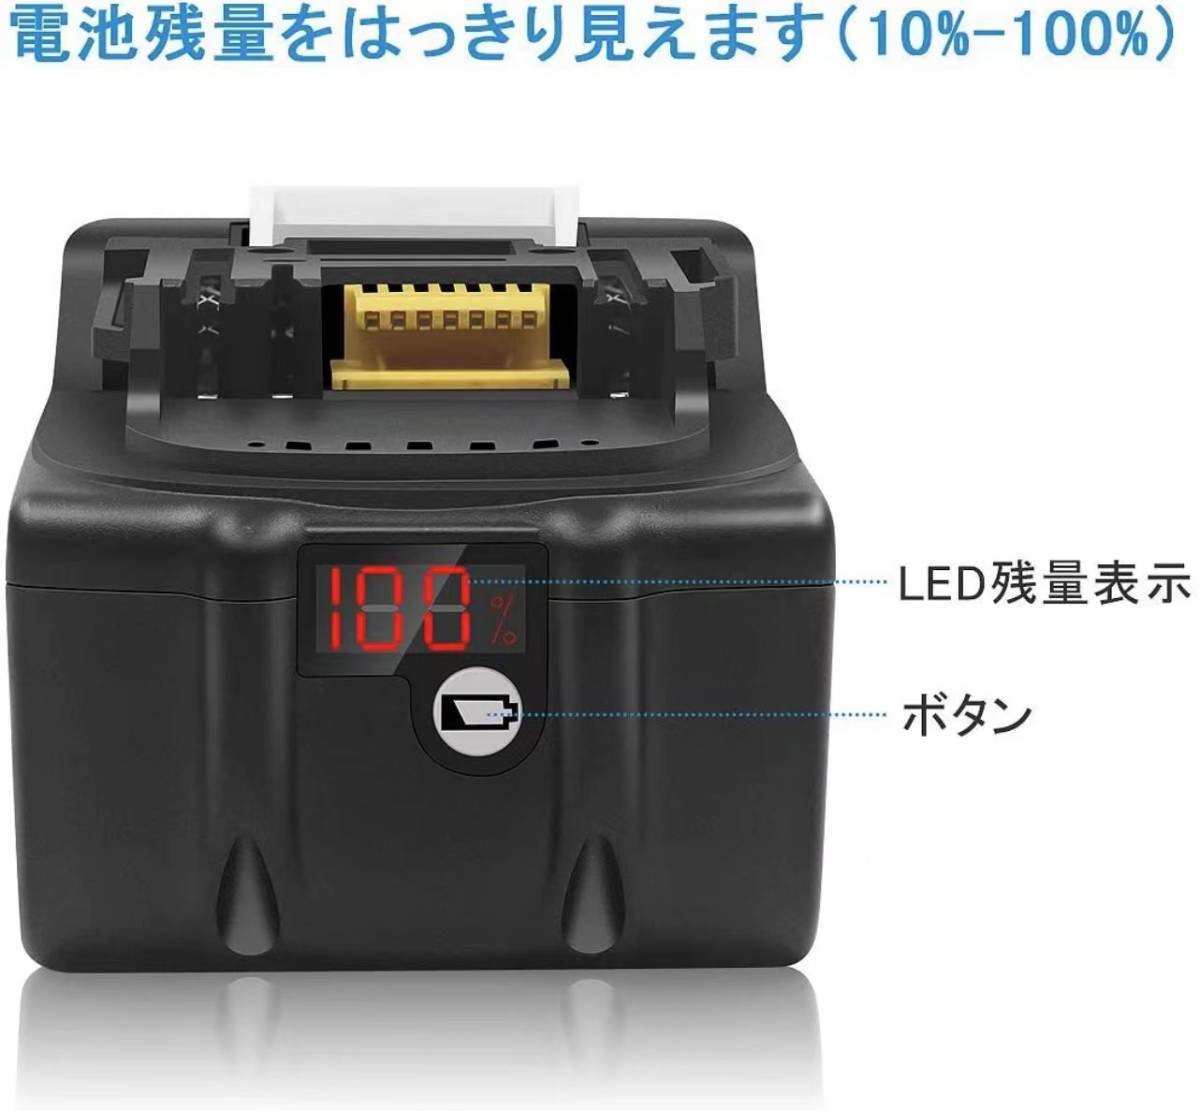 マキタ 互換バッテリー 6.0Ah 18V 一個のみ 【最新%LED残量表示】BL1830 BL1850 BL1860対応 対応 残量表示付き PSE取得済み_画像2